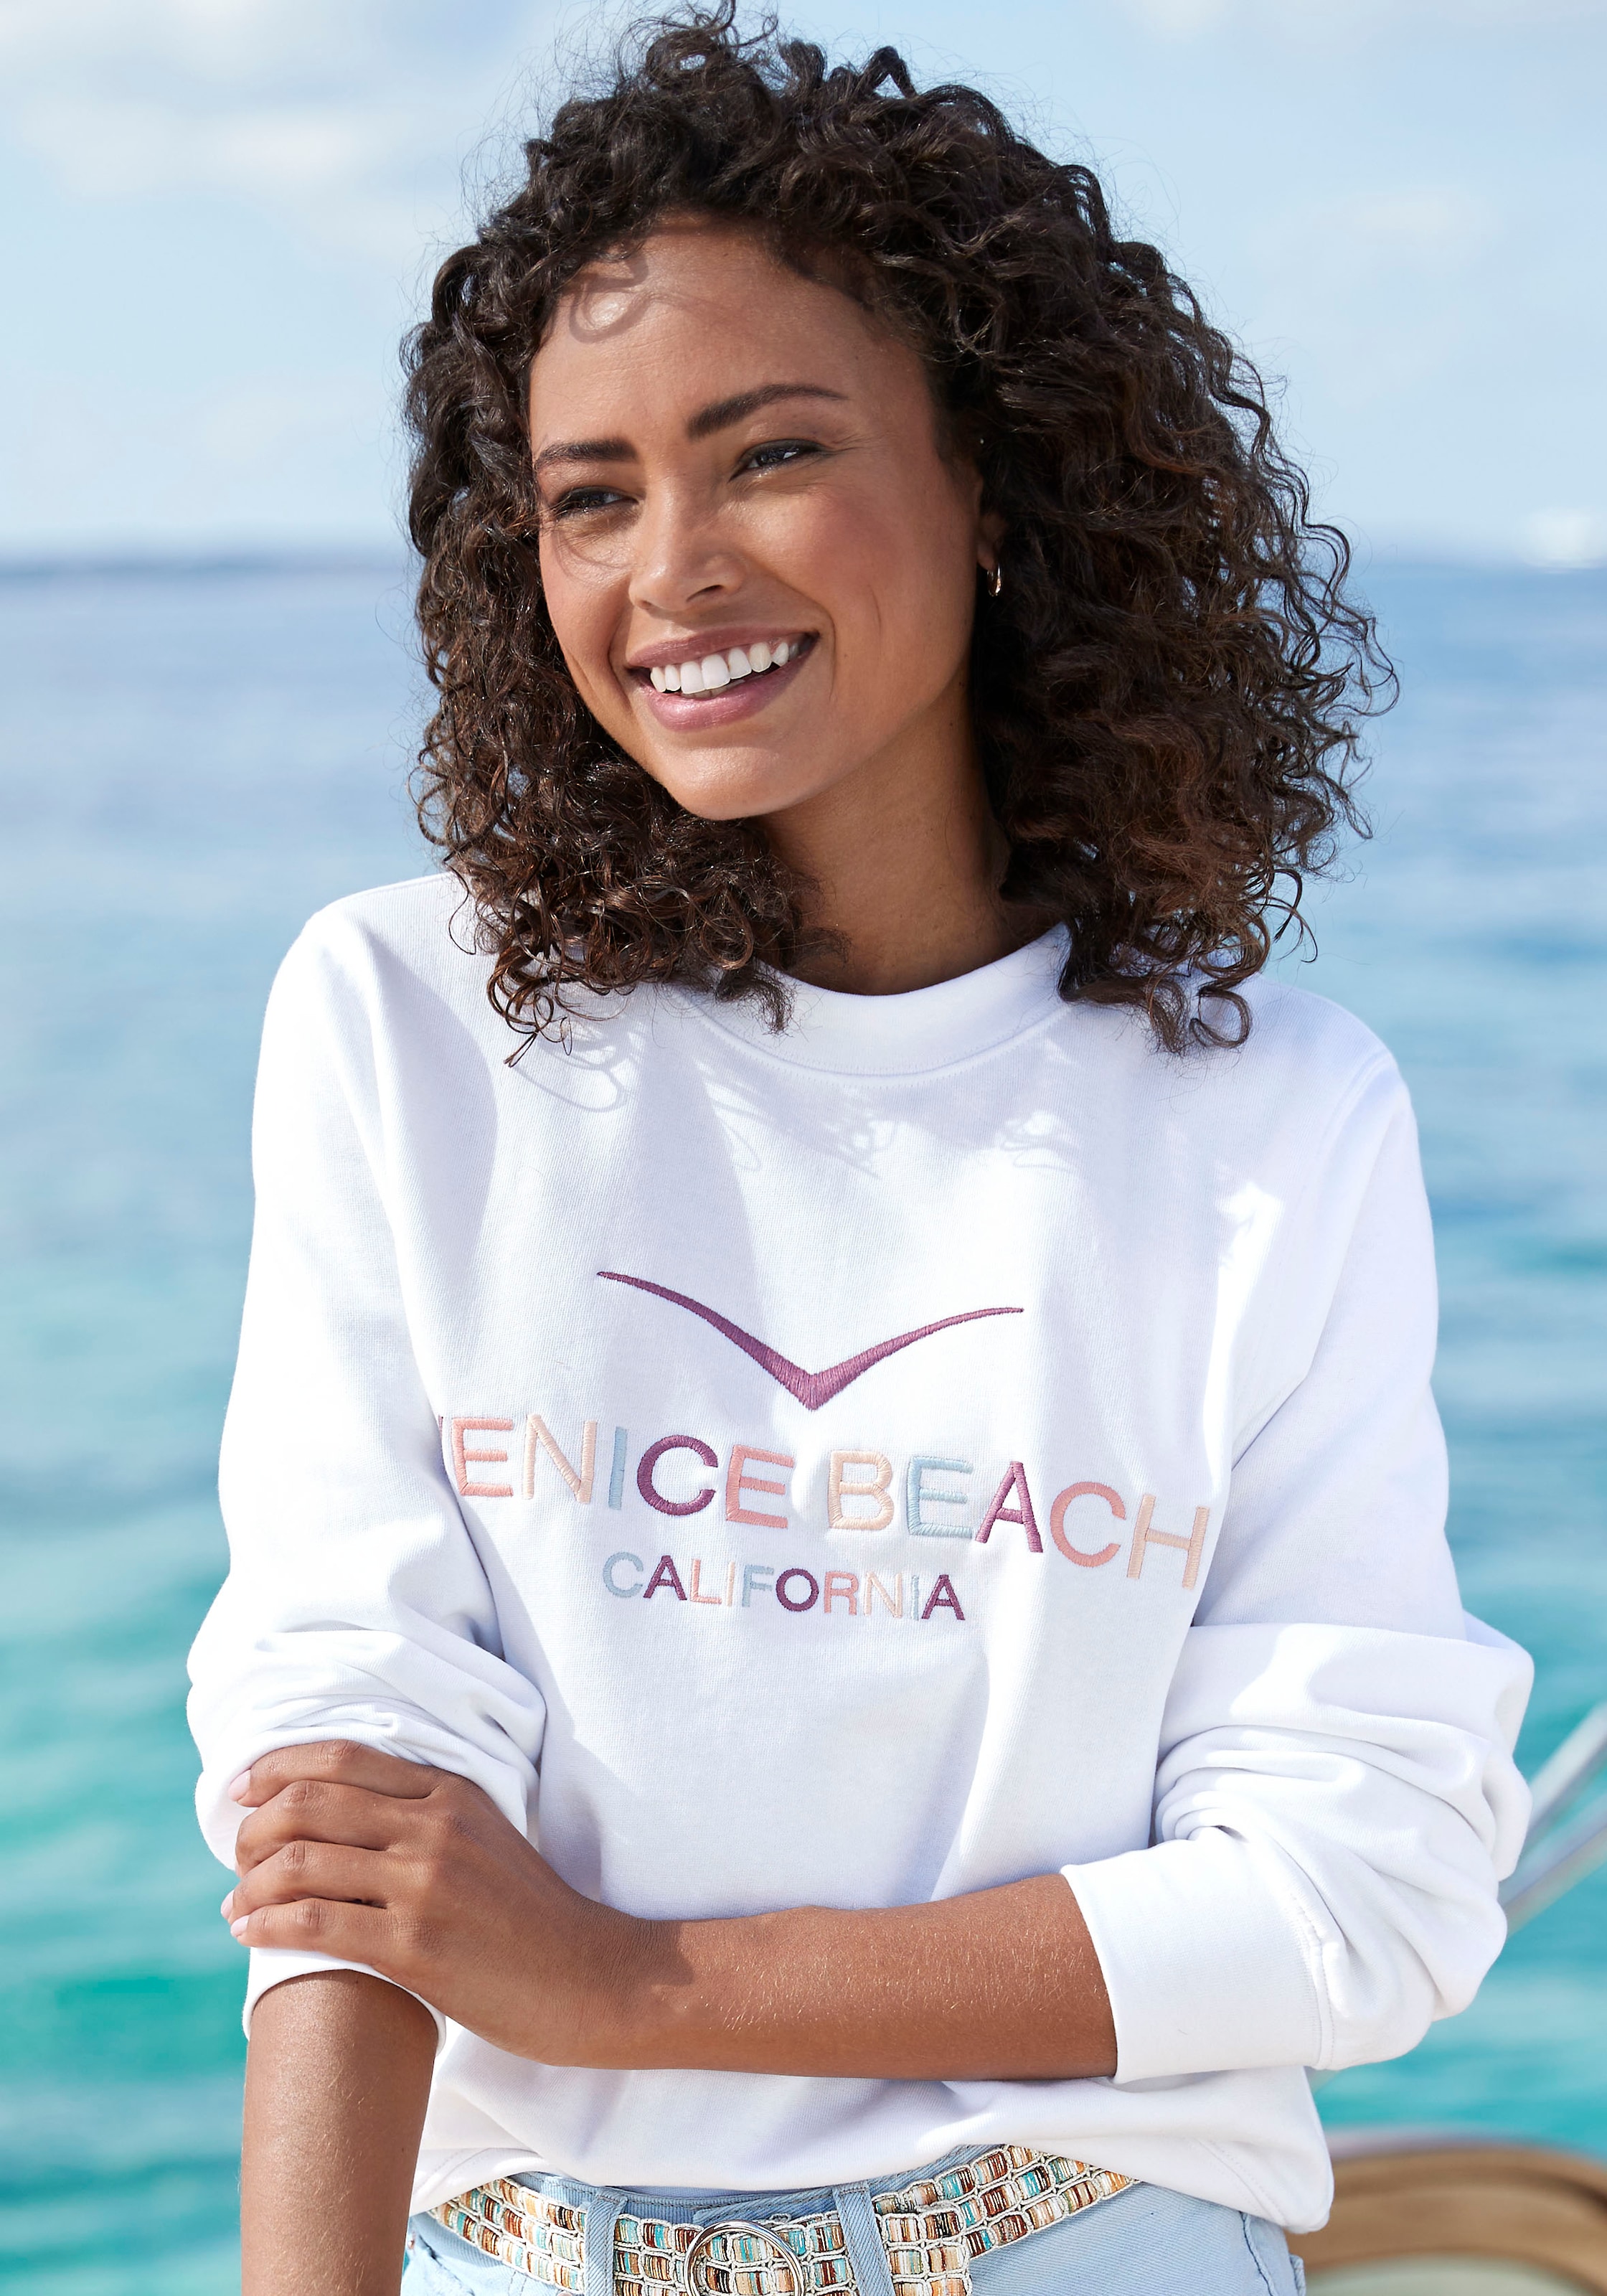 Venice Beach Sweatshirt, mit grosser Logostickerei